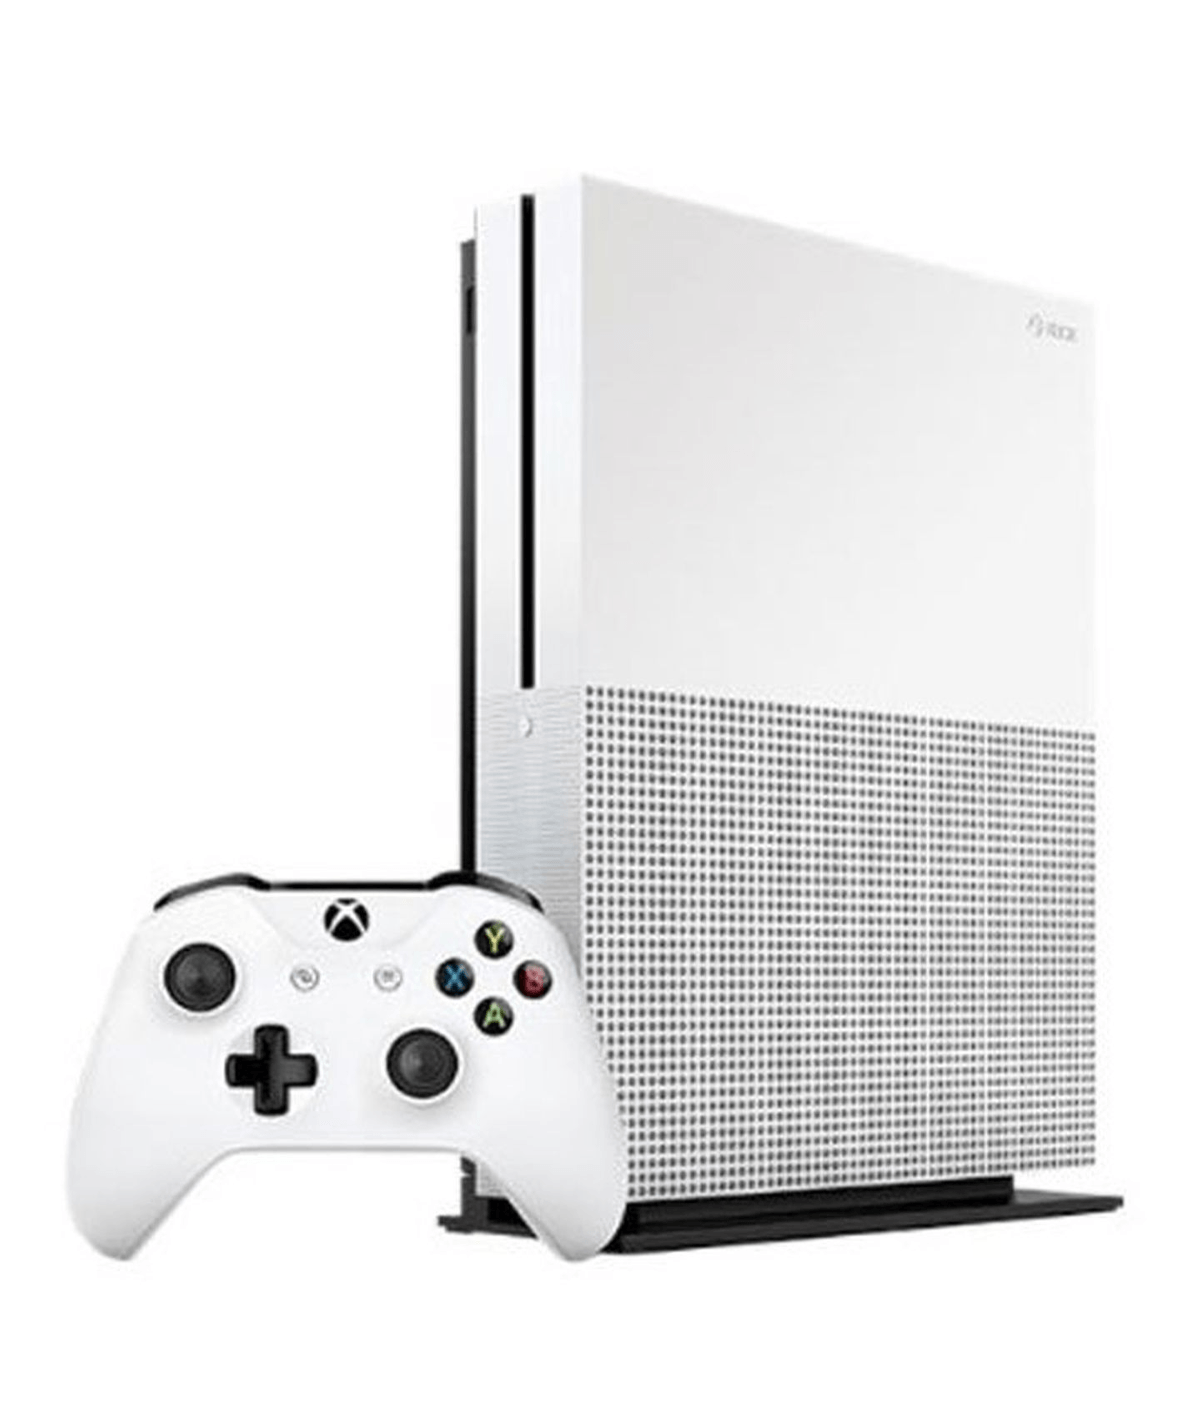 Xbox One S Completo Vídeo Game Com Garantia E Nota Fiscal